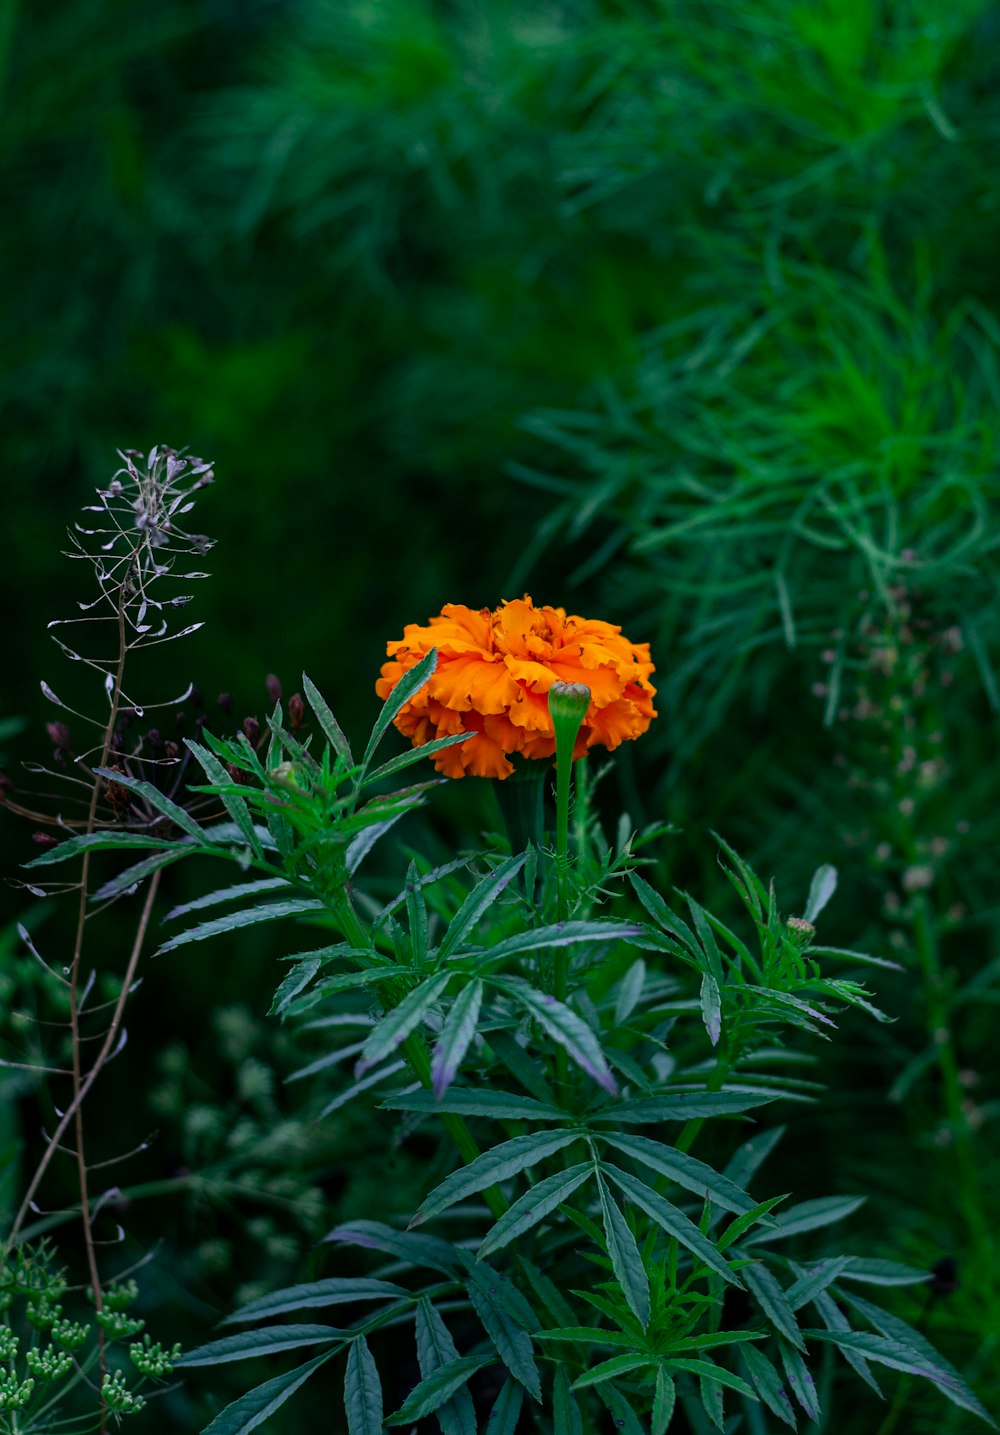 eine einzelne orangefarbene Blume auf einer grünen Wiese